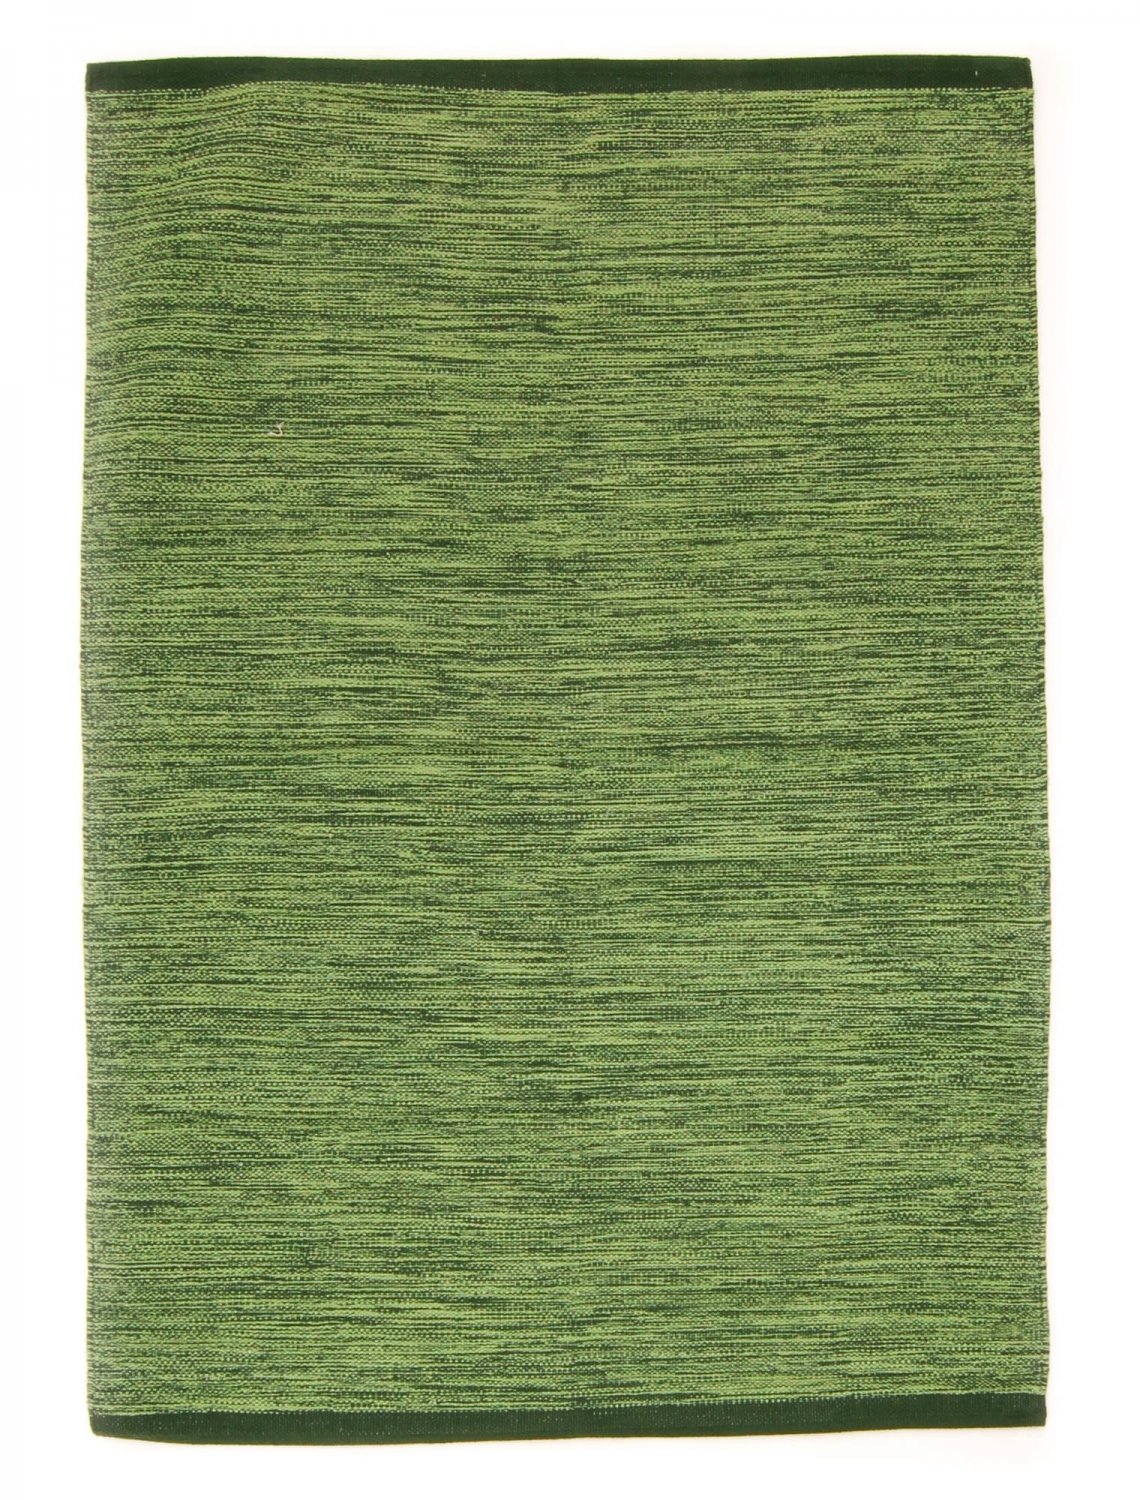 Dywan bawełniany - Slite (zielony)